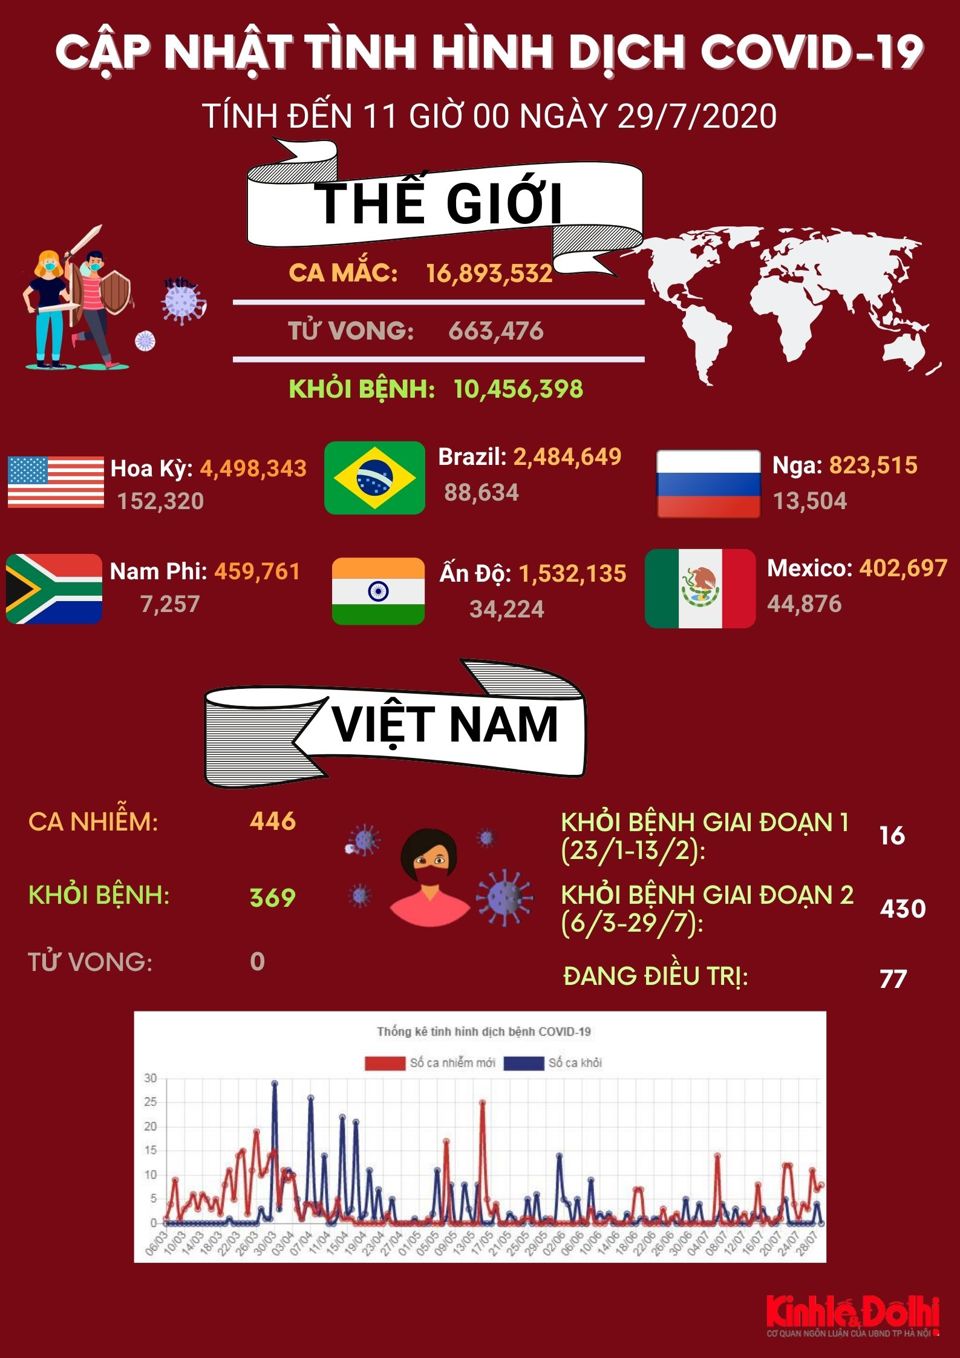 [Infographic] Gần 17 triệu người trên thế giới mắc Covid-19 - Ảnh 1